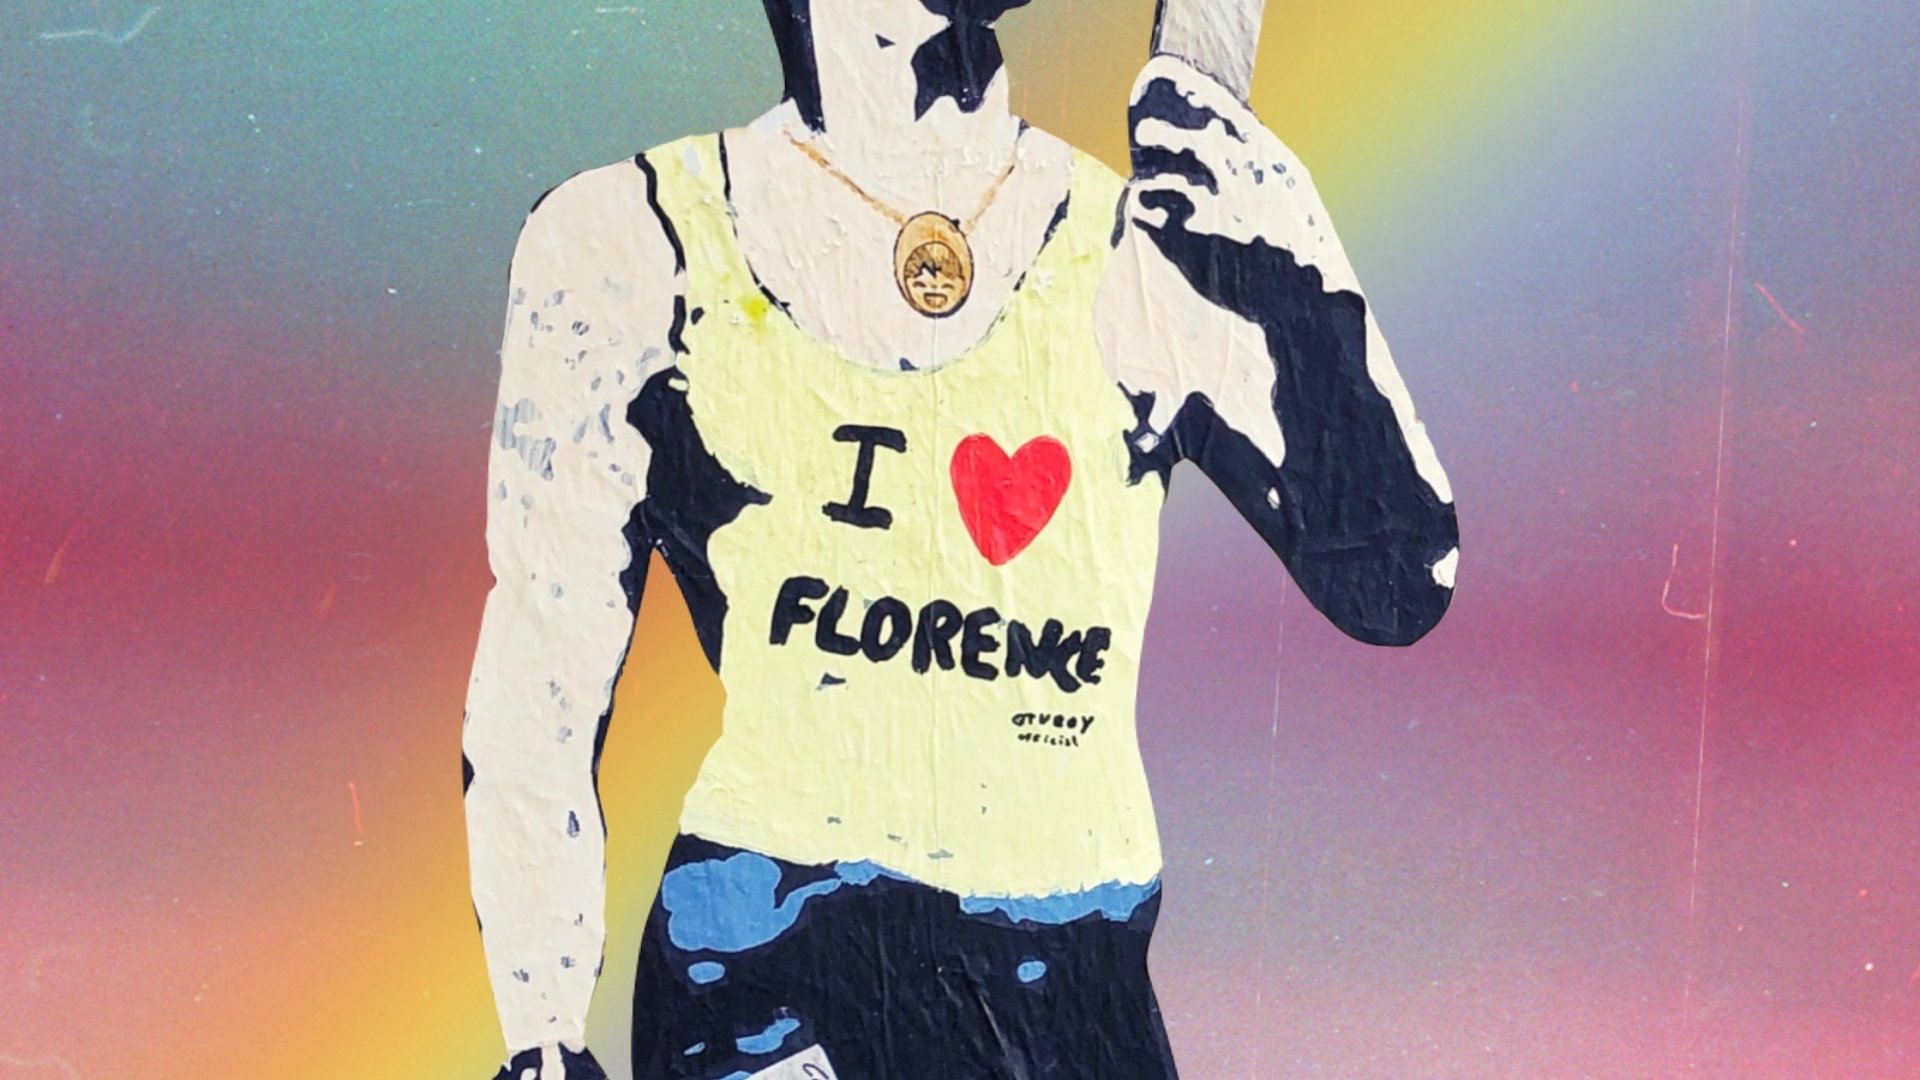 David Firenze LGBTQ Mural